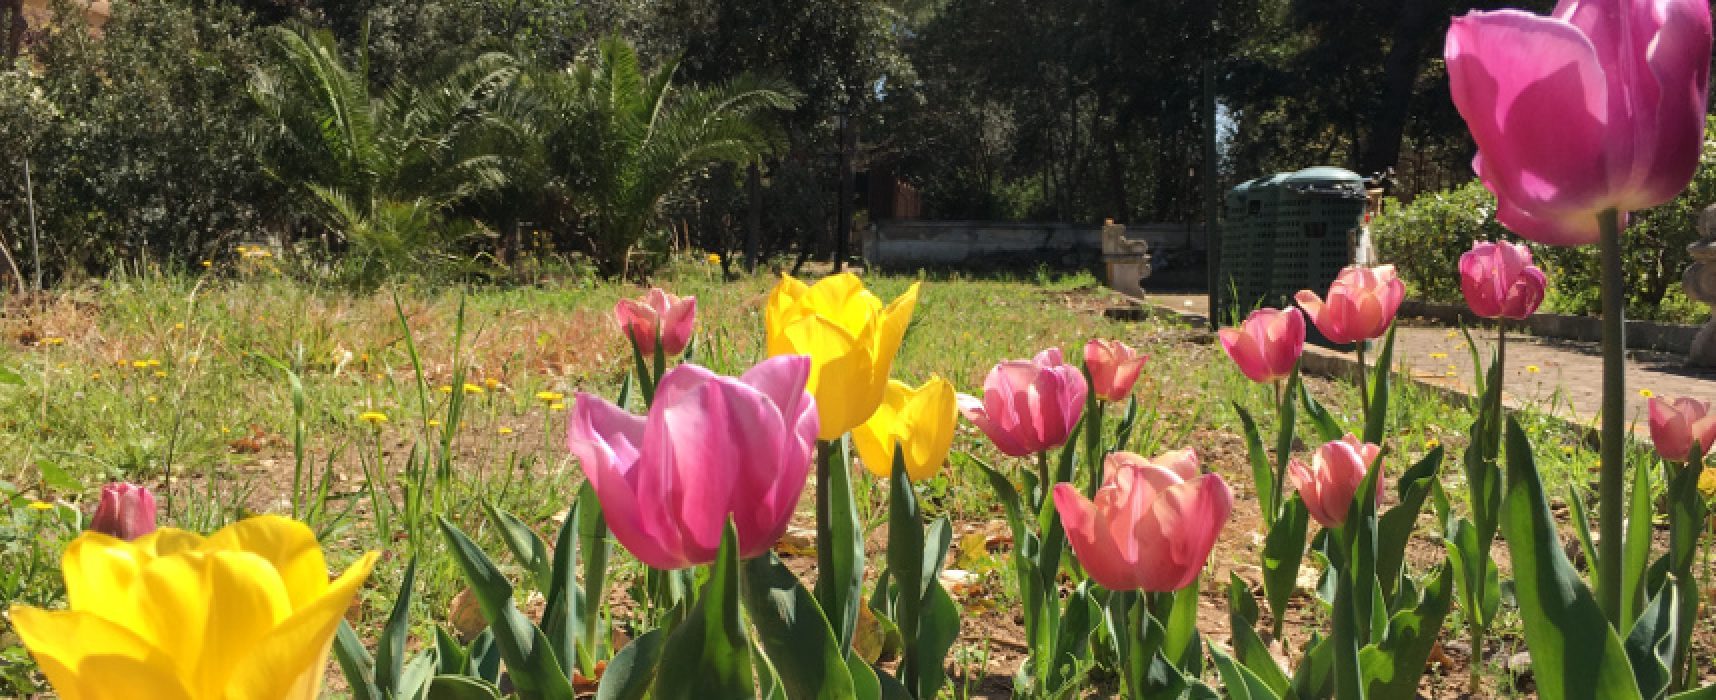 Concorso per scuole pugliesi, in palio bulbi di tulipano da piantare nelle aree verdi